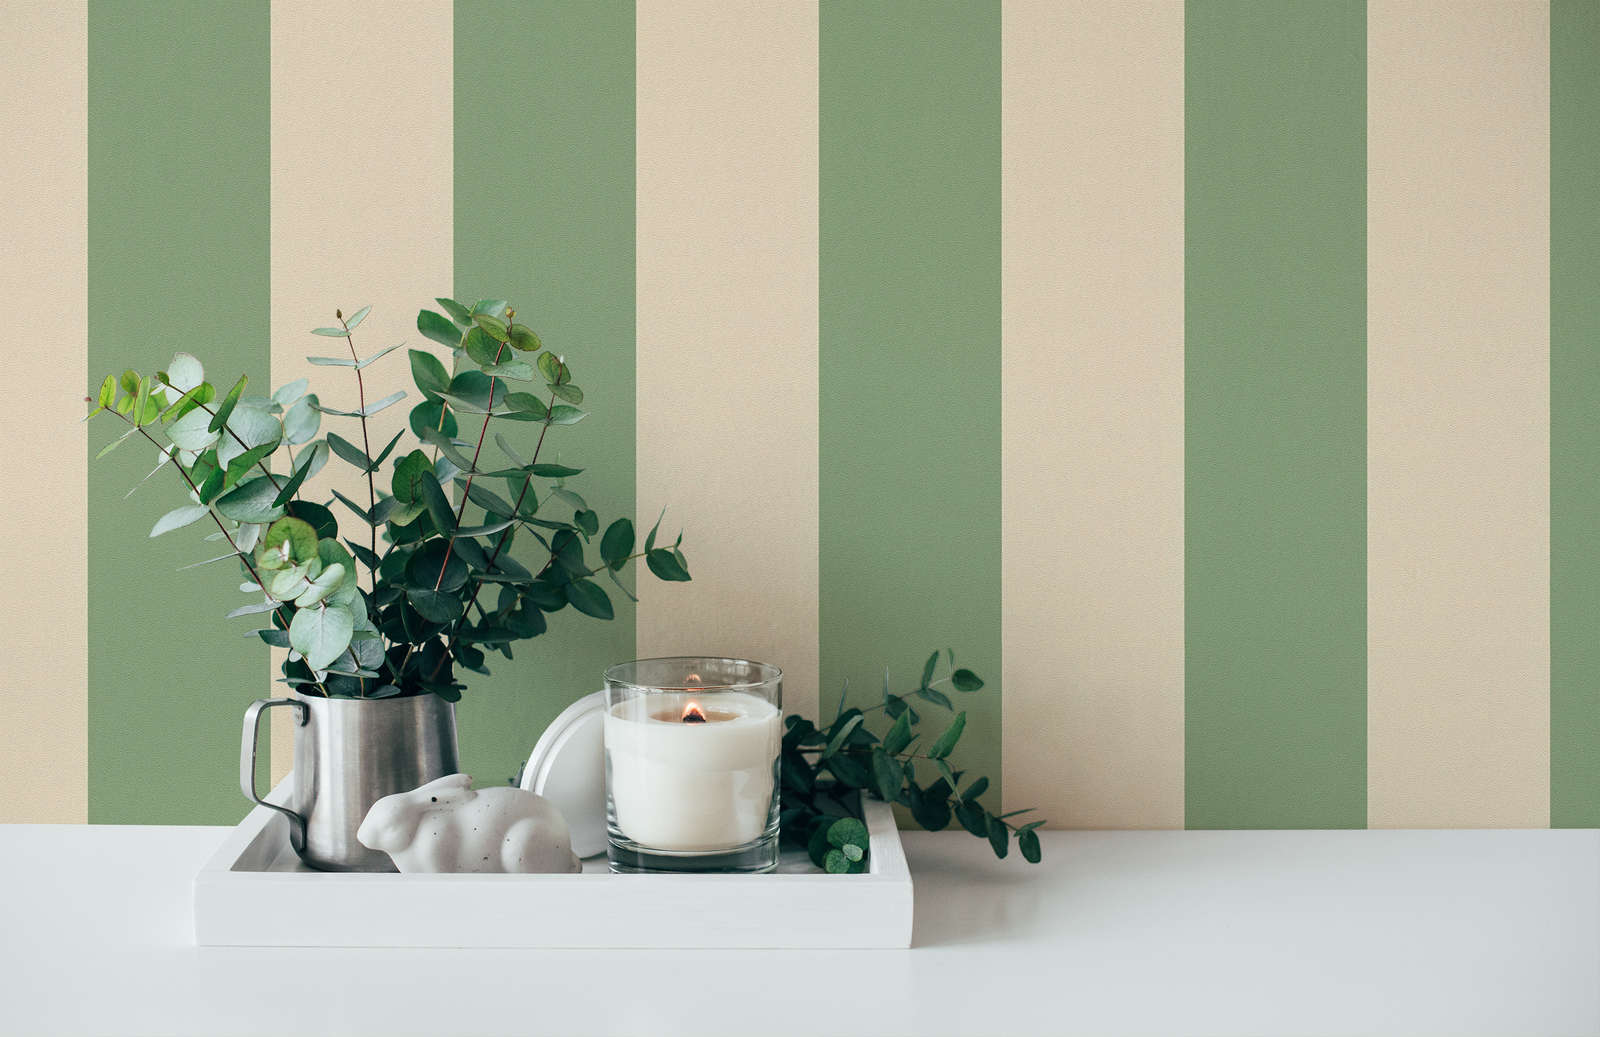             Papel pintado no tejido con rayas en bloque y estructura ligera - beige, verde
        